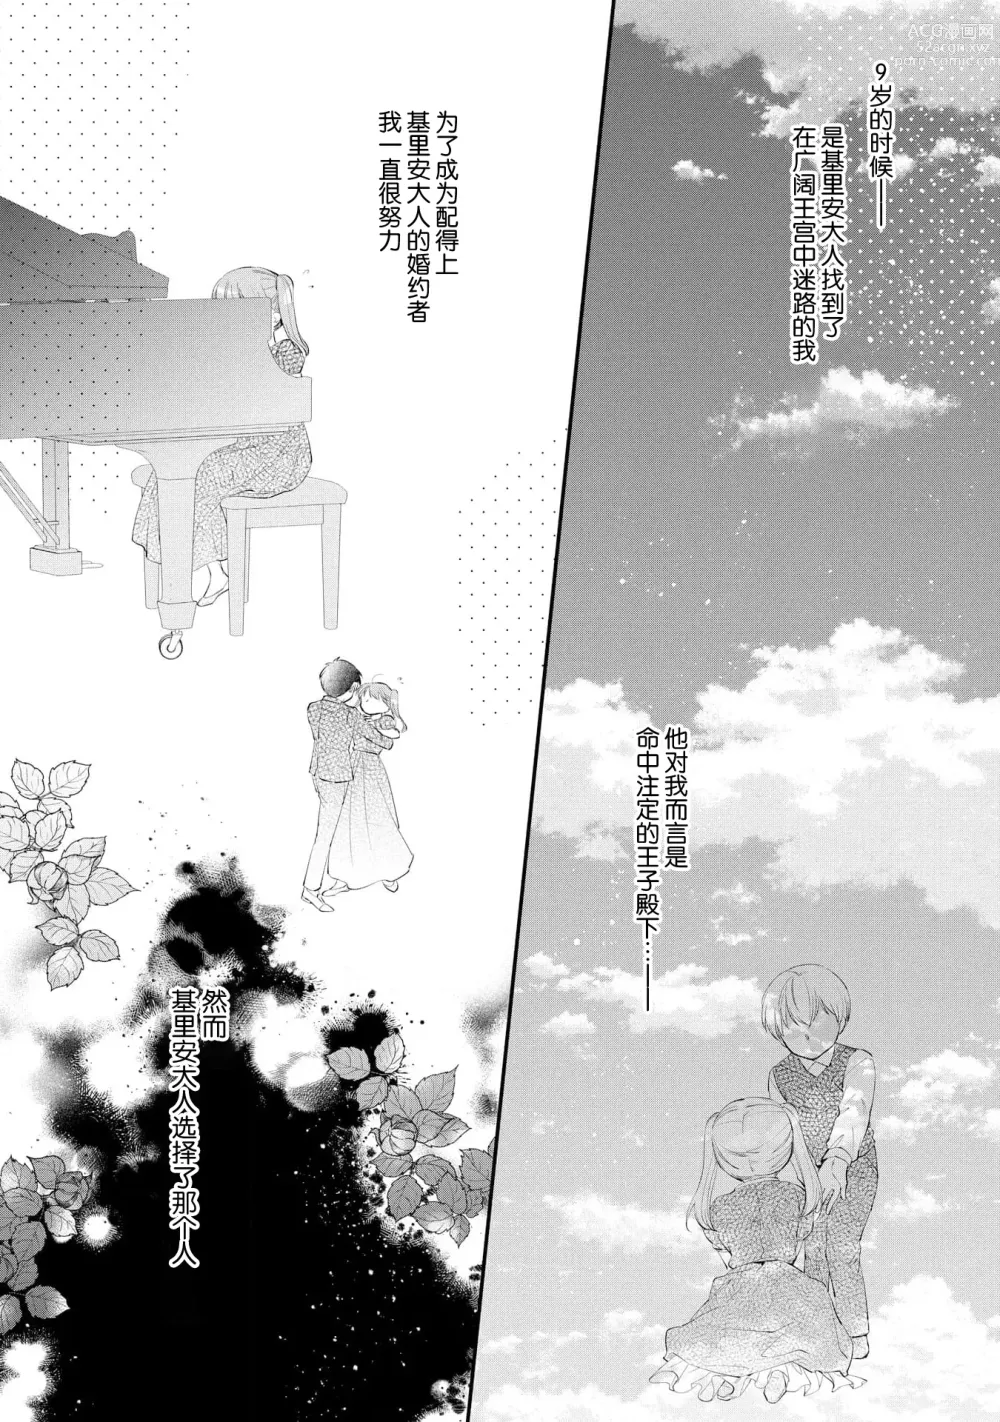 Page 278 of manga 新婚约者超宠我 1-11